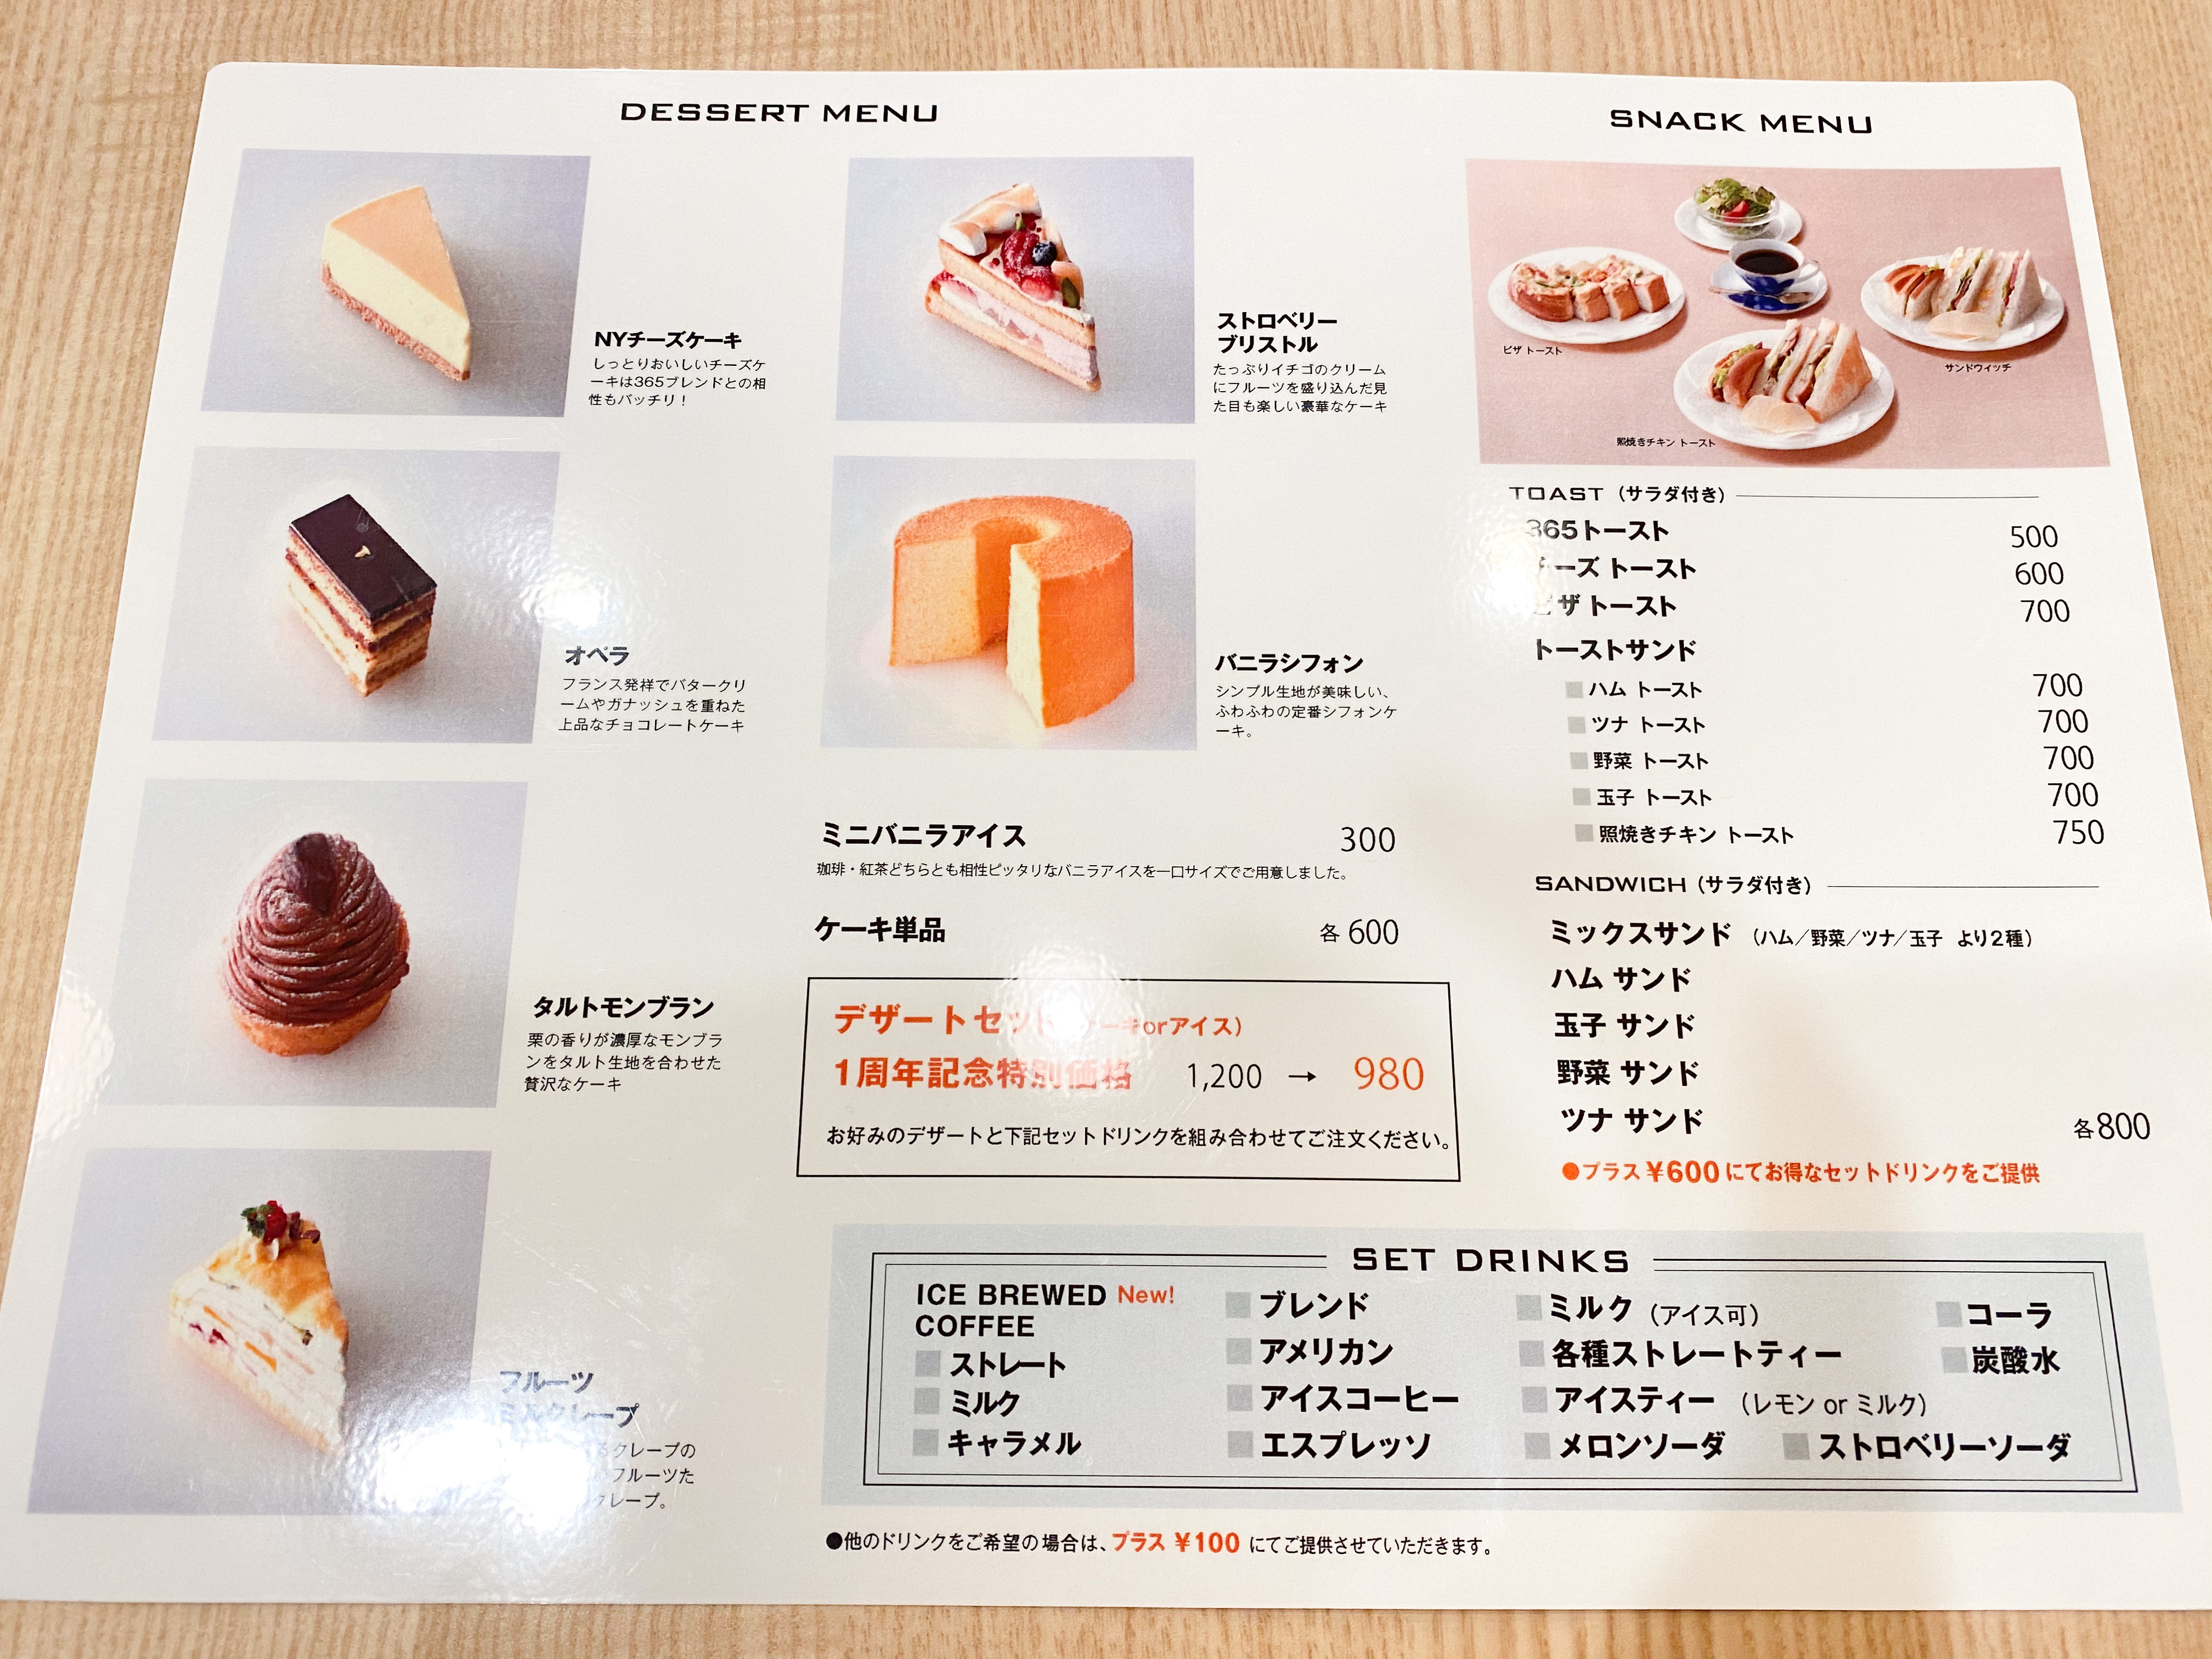 珈琲貴族姉妹店 365cafe西武渋谷店でモーニング エジンバラにカフェの魅力を組み合わせた駅近で便利な喫茶店 朝から優雅に新宿モーニング